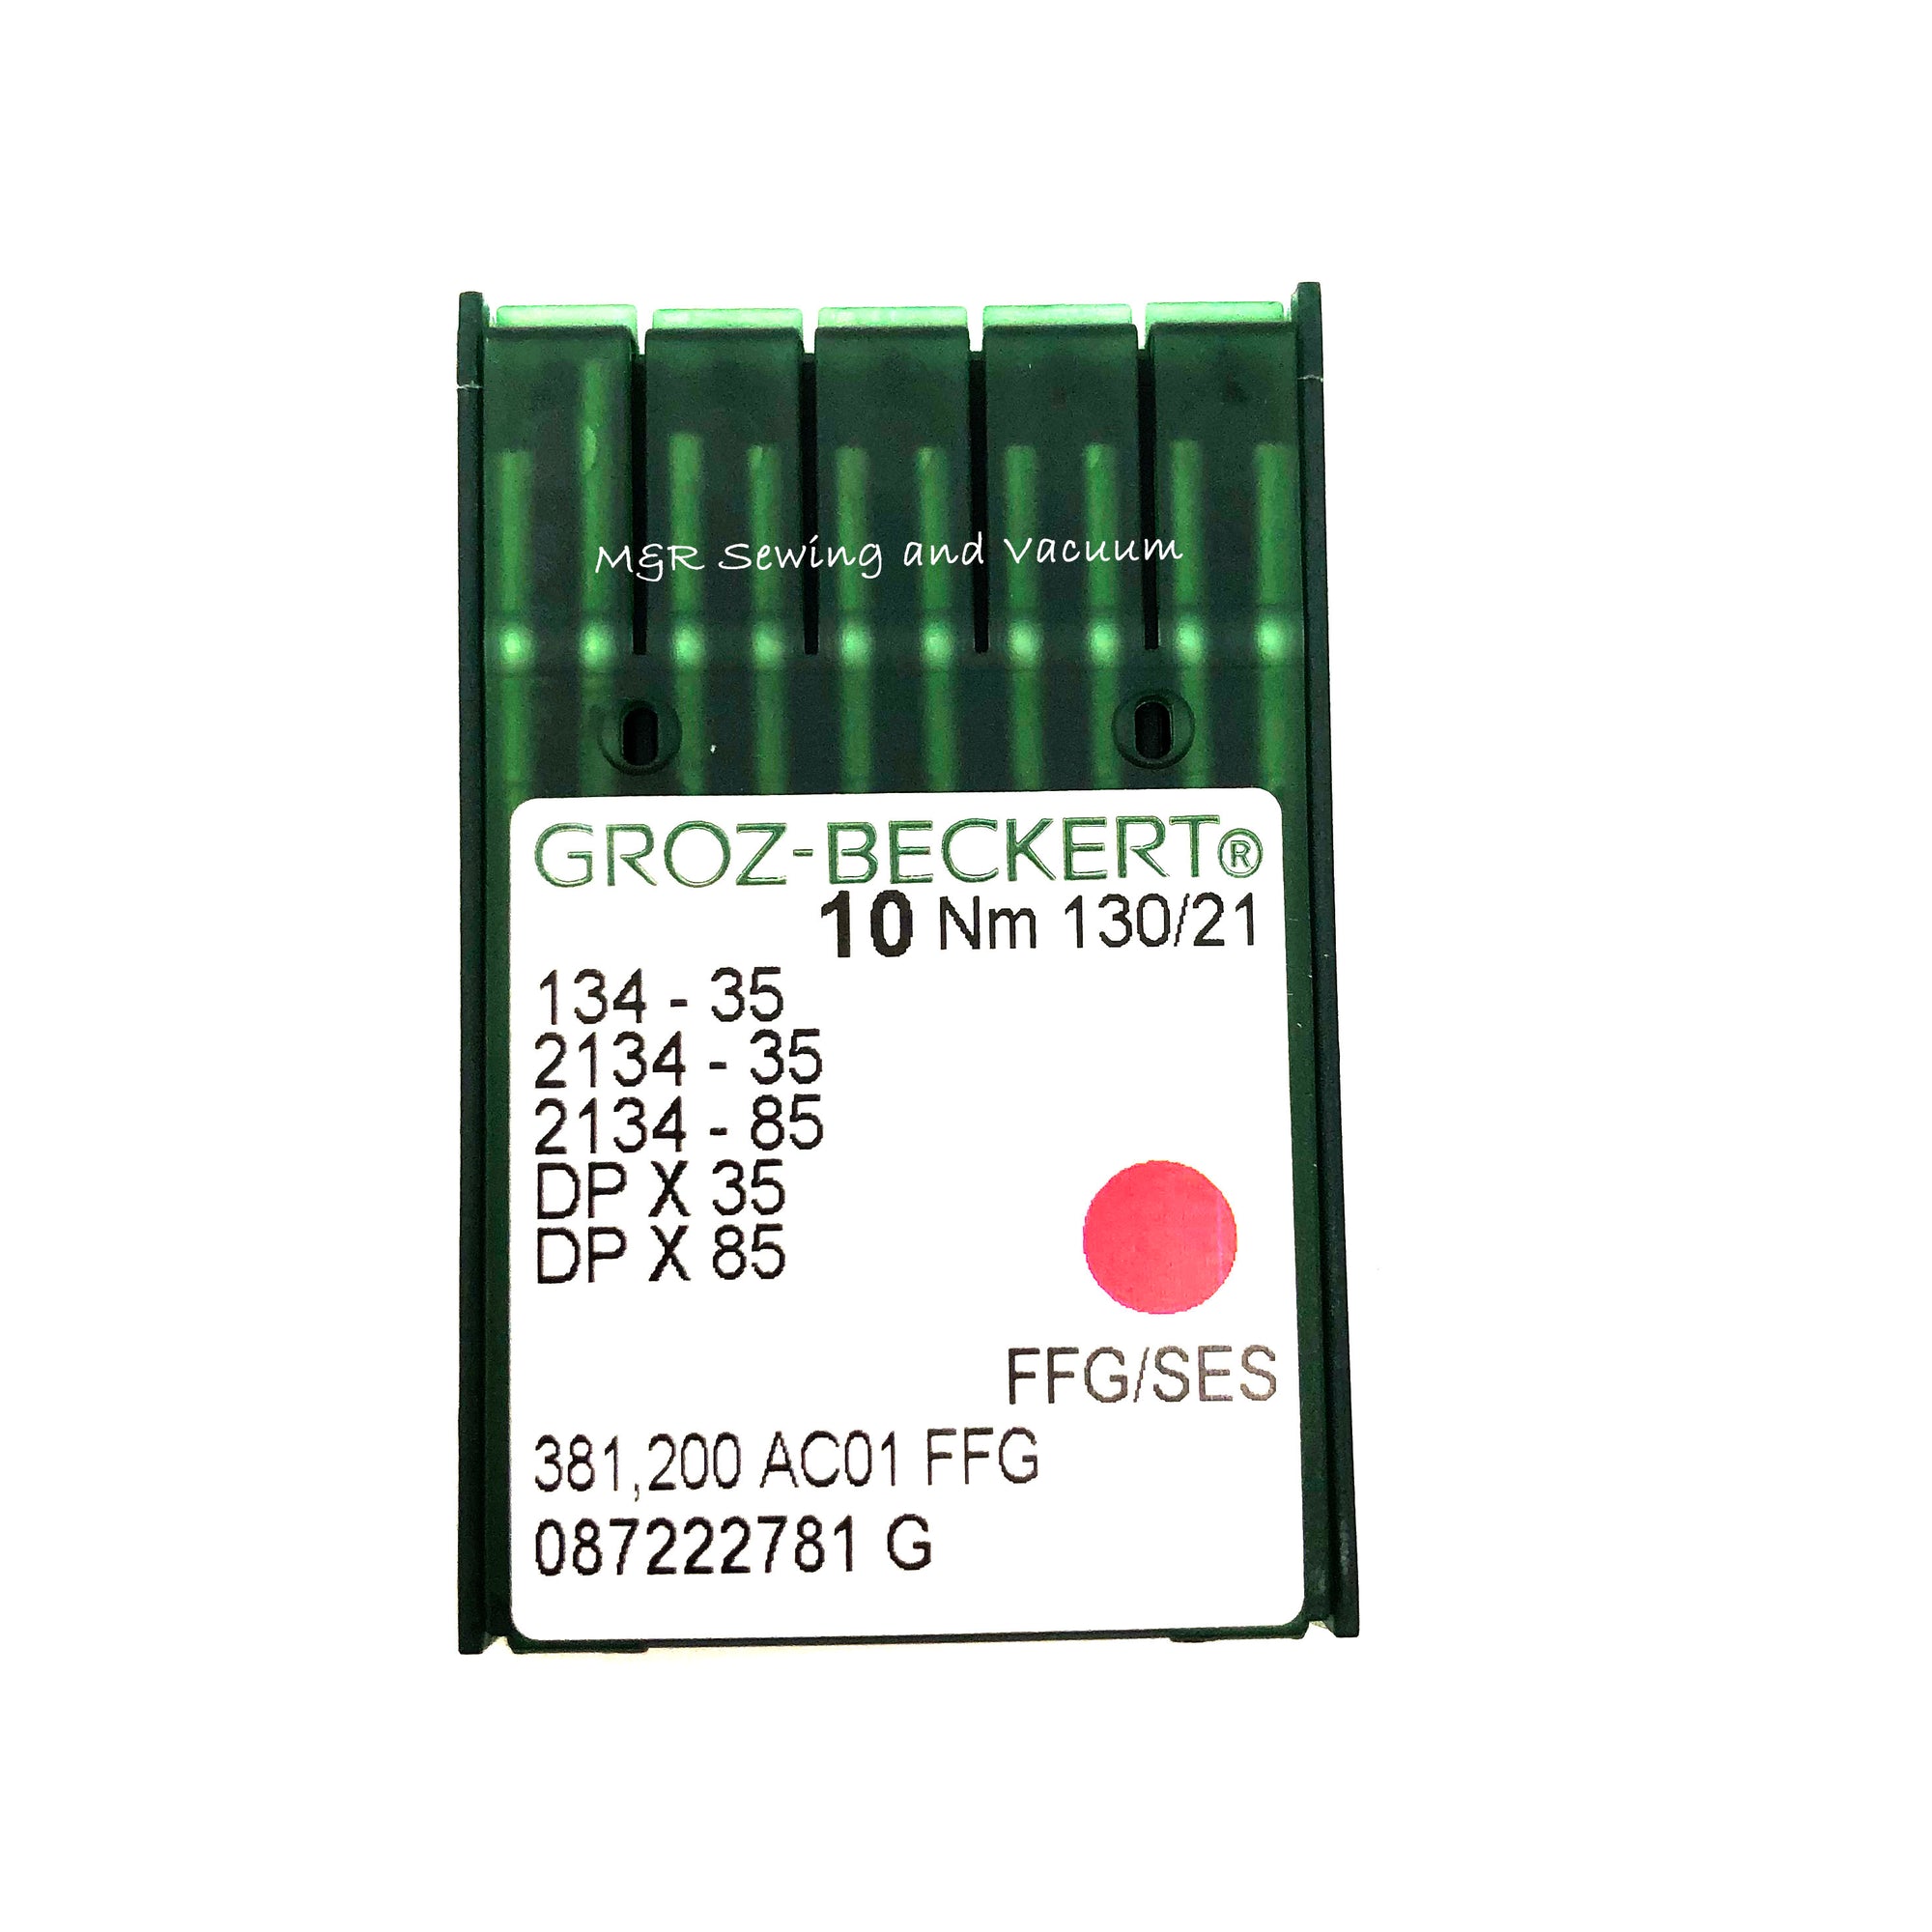 Groz-Beckert 134-35 (DPx35) Industrial Needles - 130/21